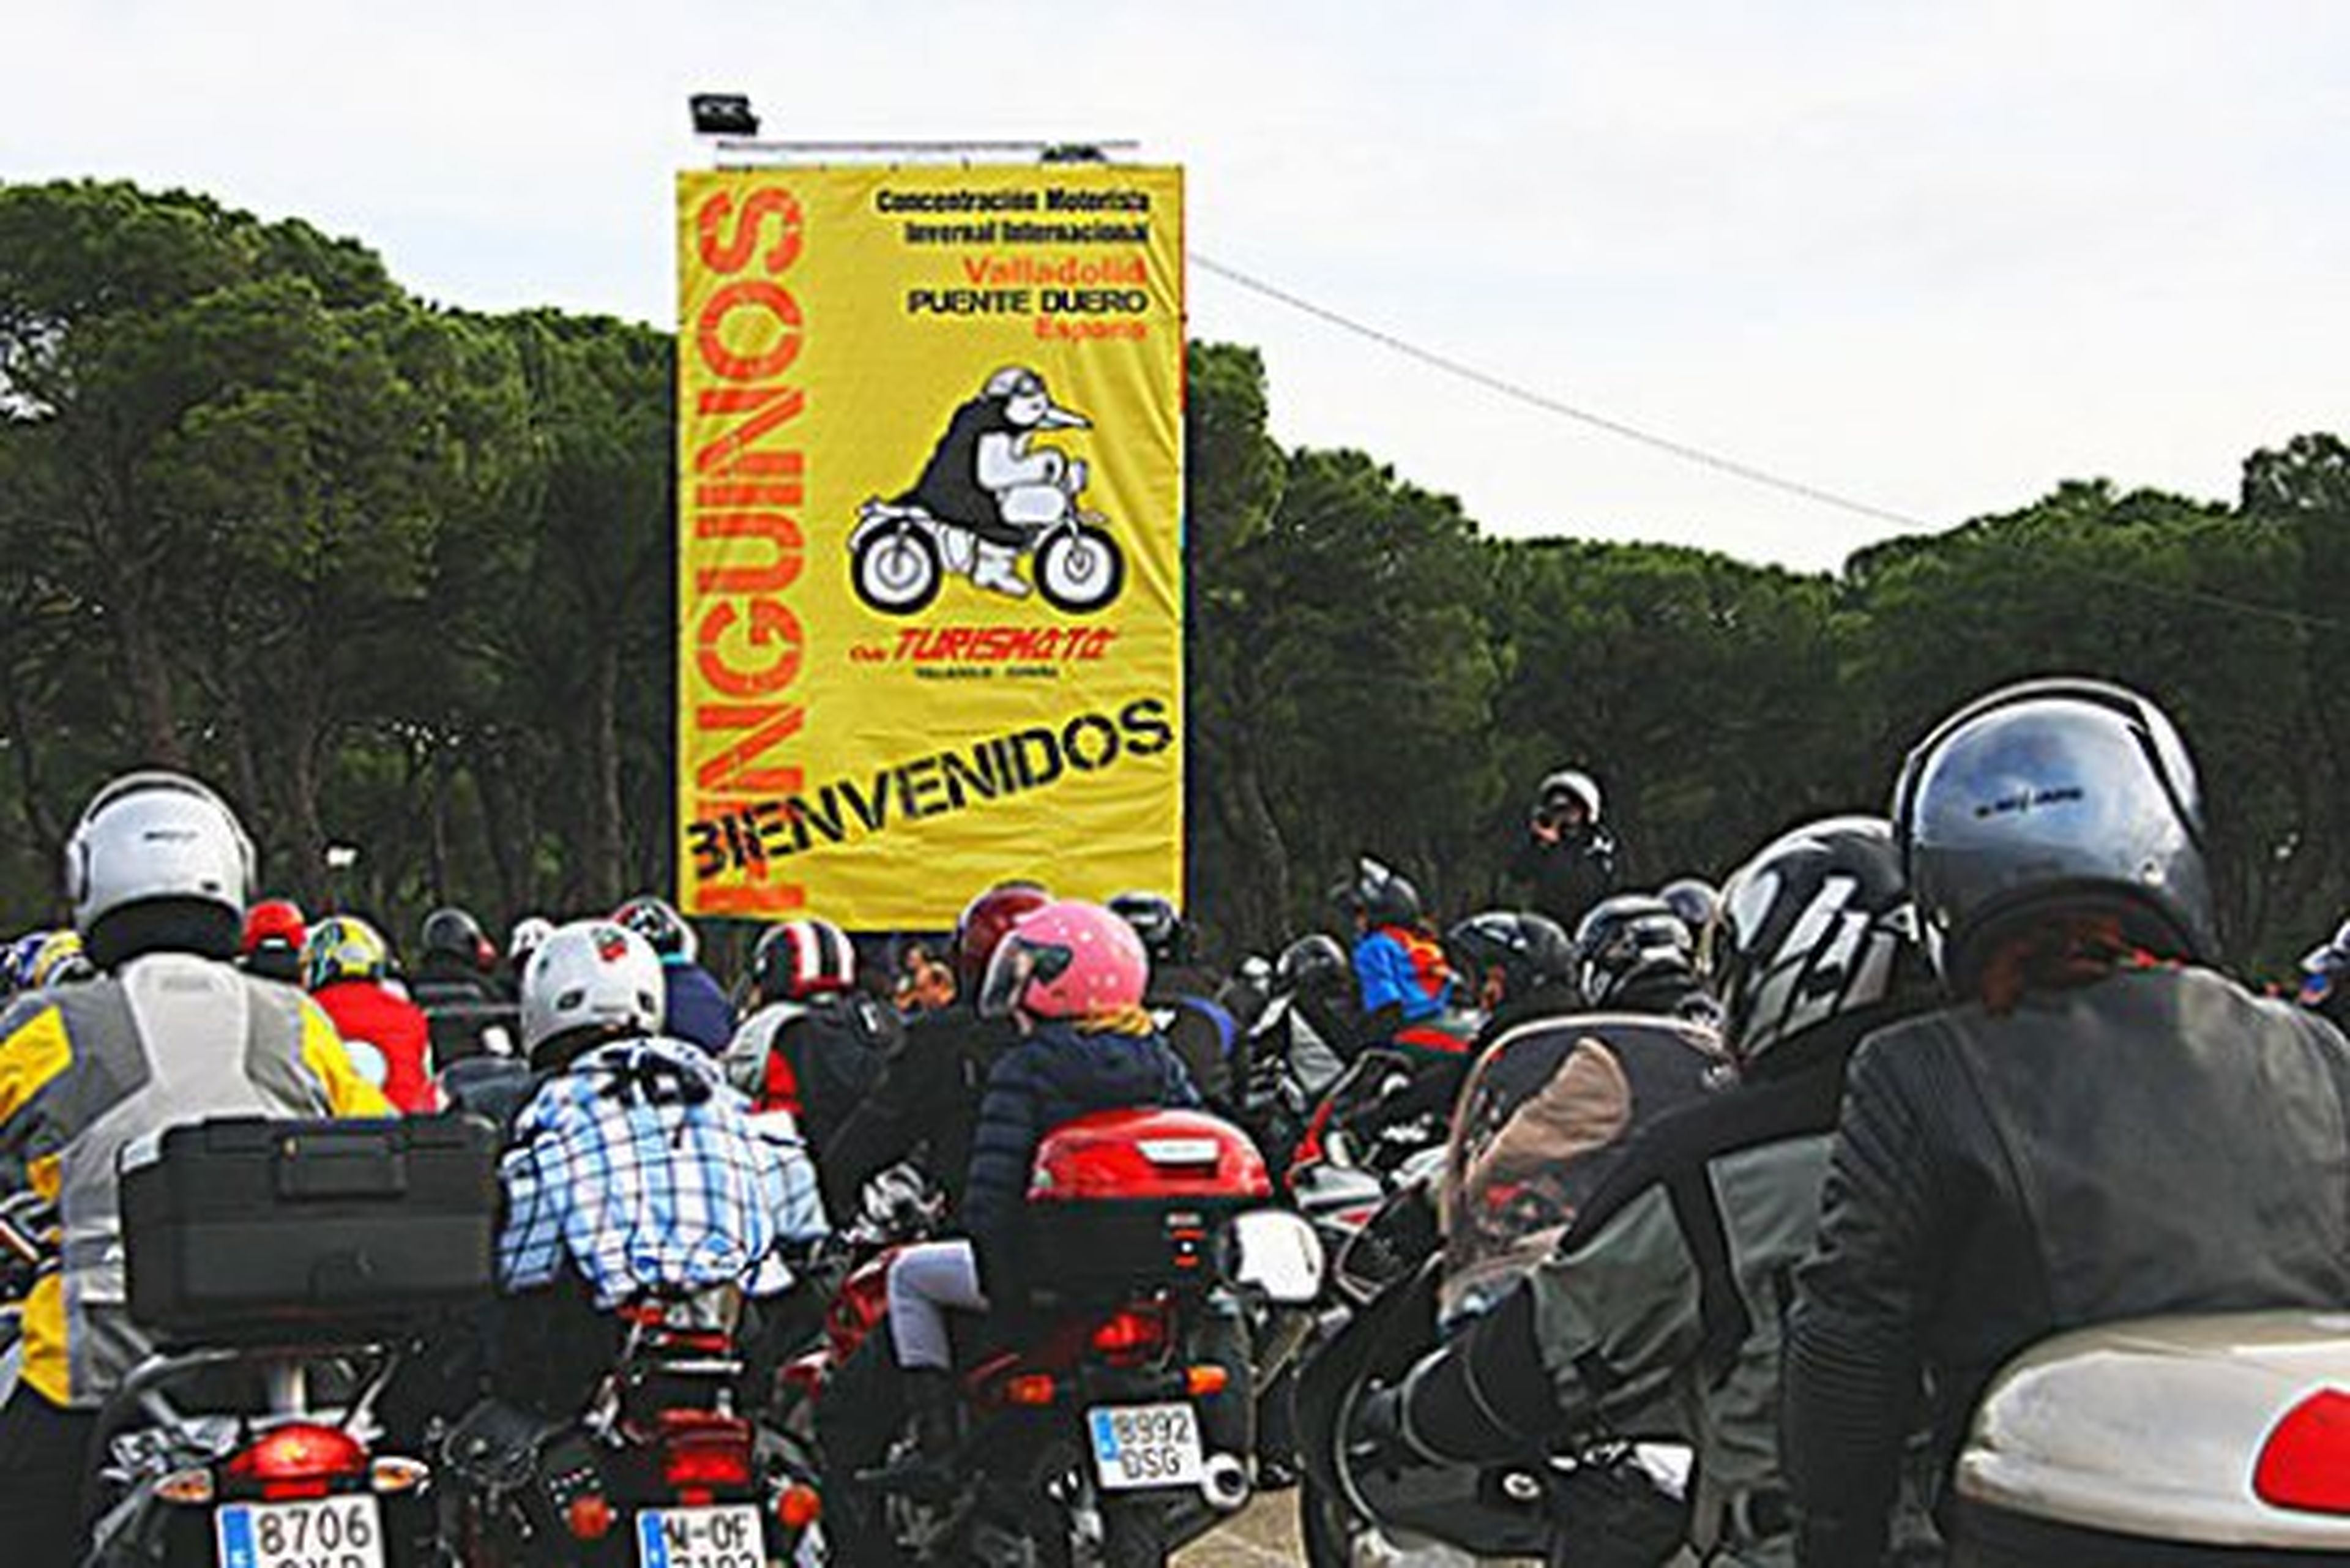 La concentración de motos Pingüinos, suspendida para 2016